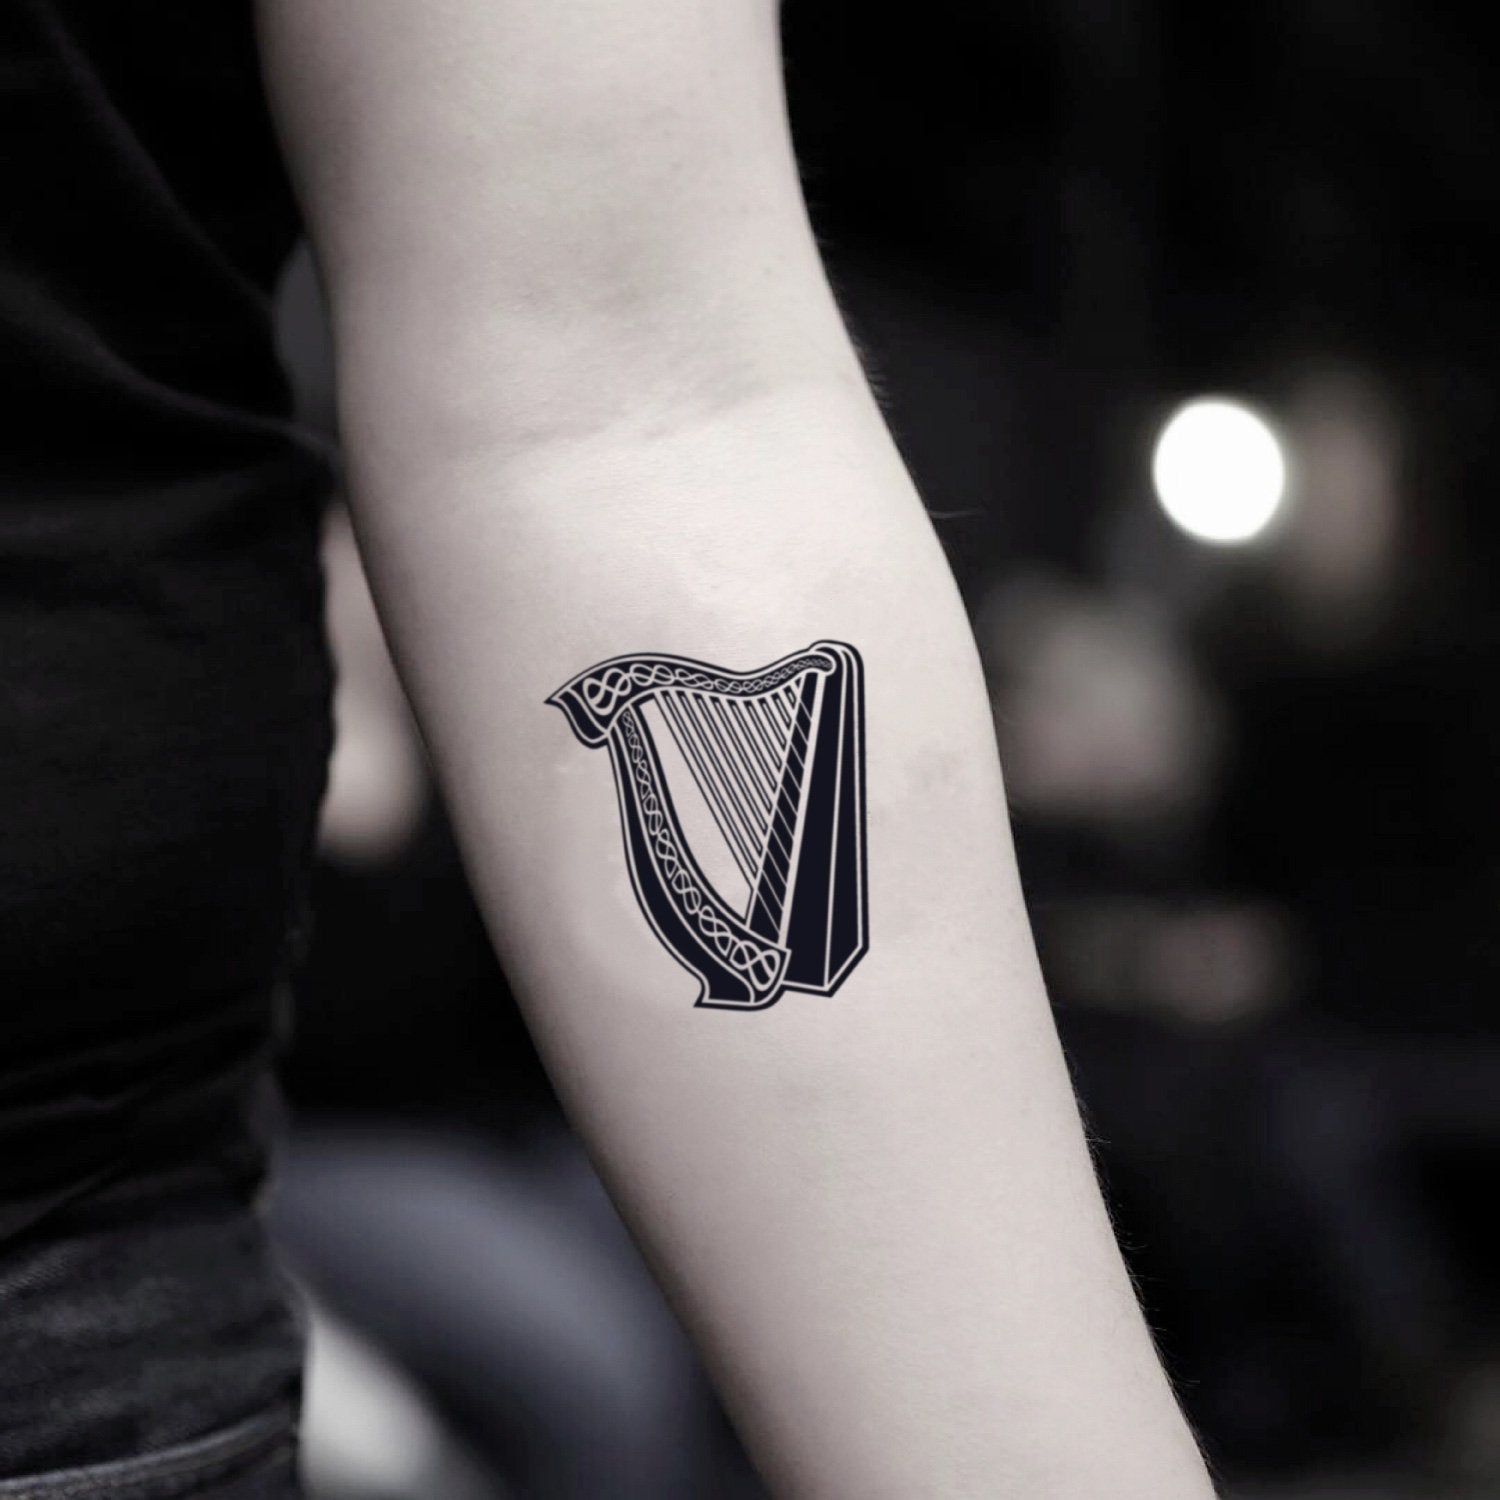 Blues harp tattoo | Tattoos, Mic tattoo, Music tattoos